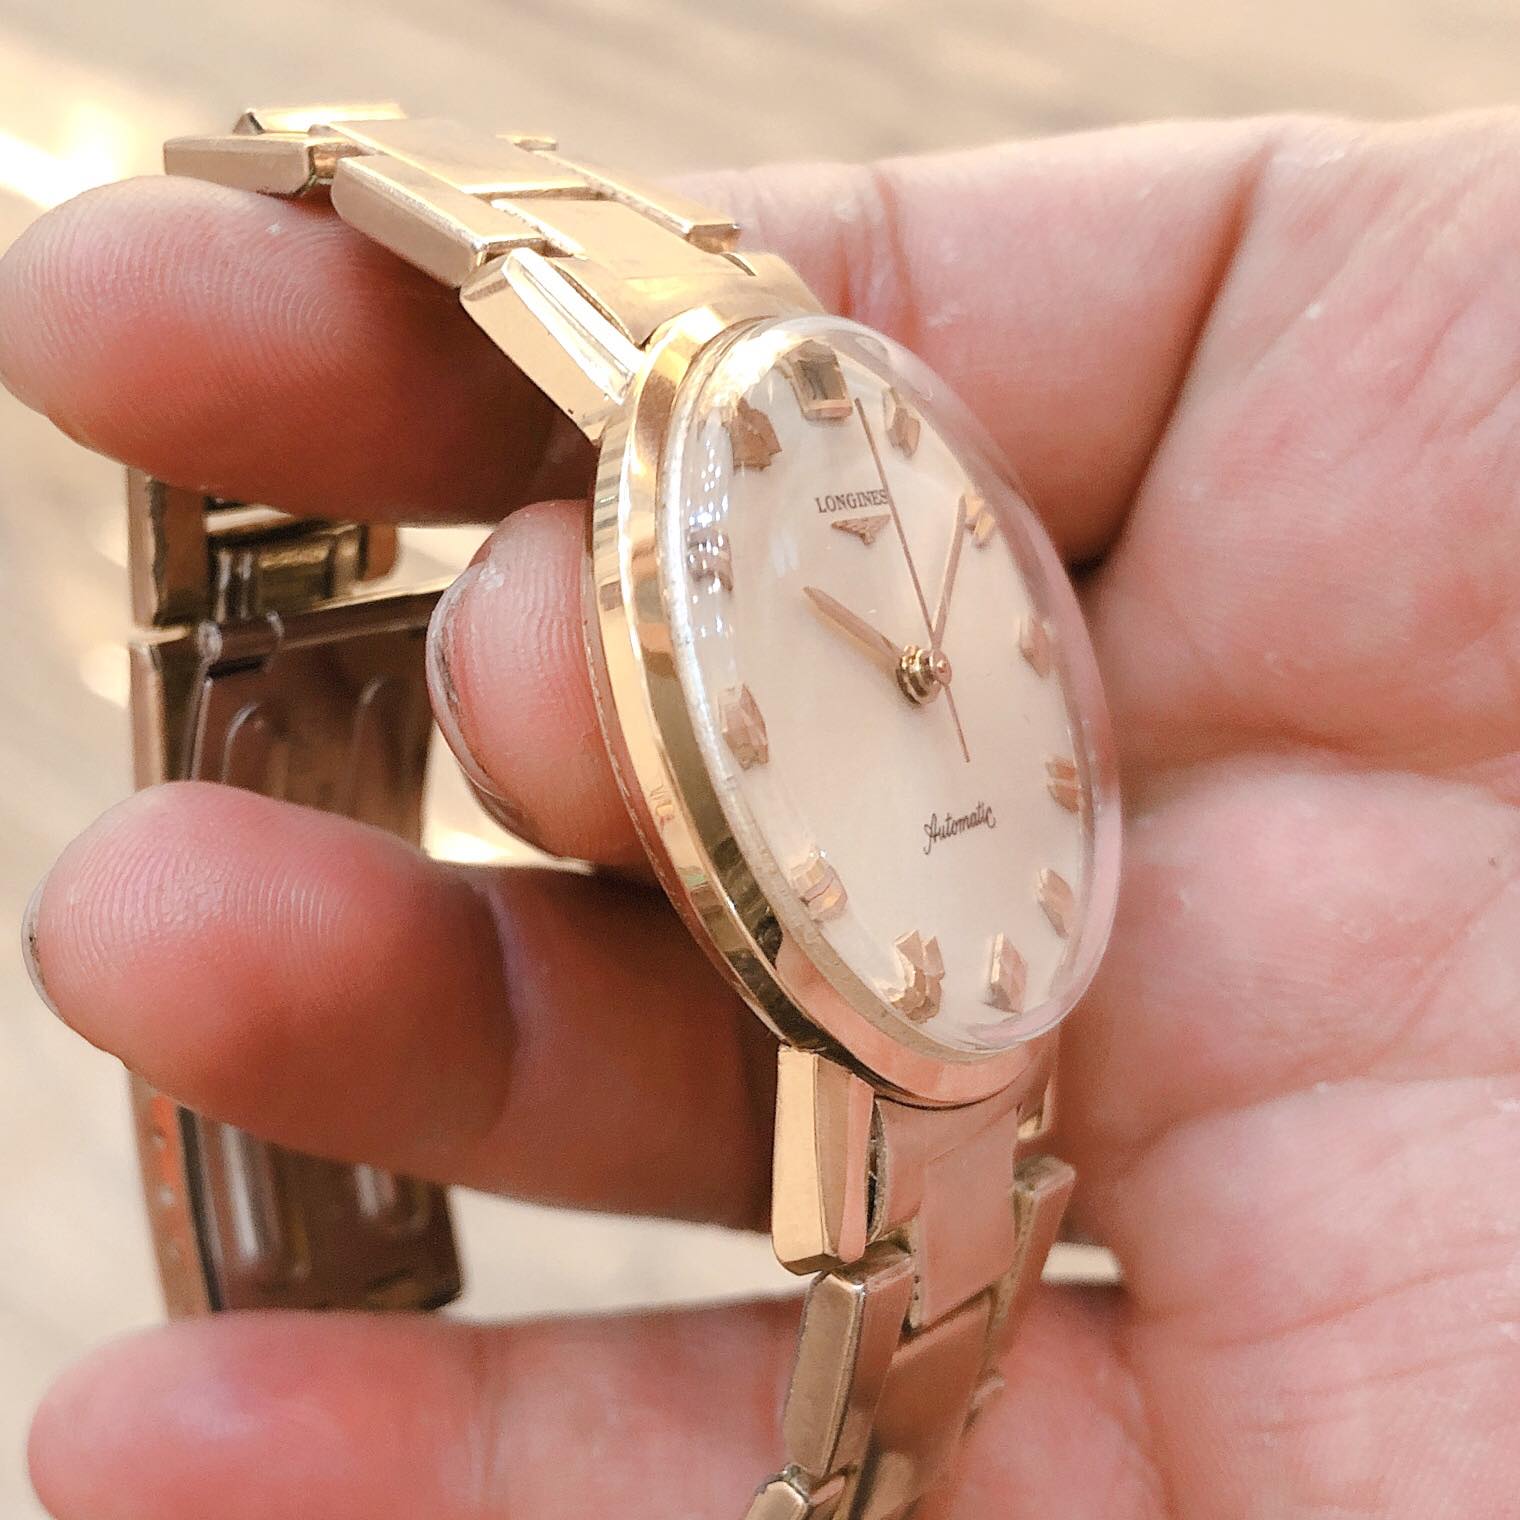 Đồng hồ cổ Longines Automatic vàng đúc đặc 18k nguyên khối fullbox chính hãng Thuỵ Sĩ 